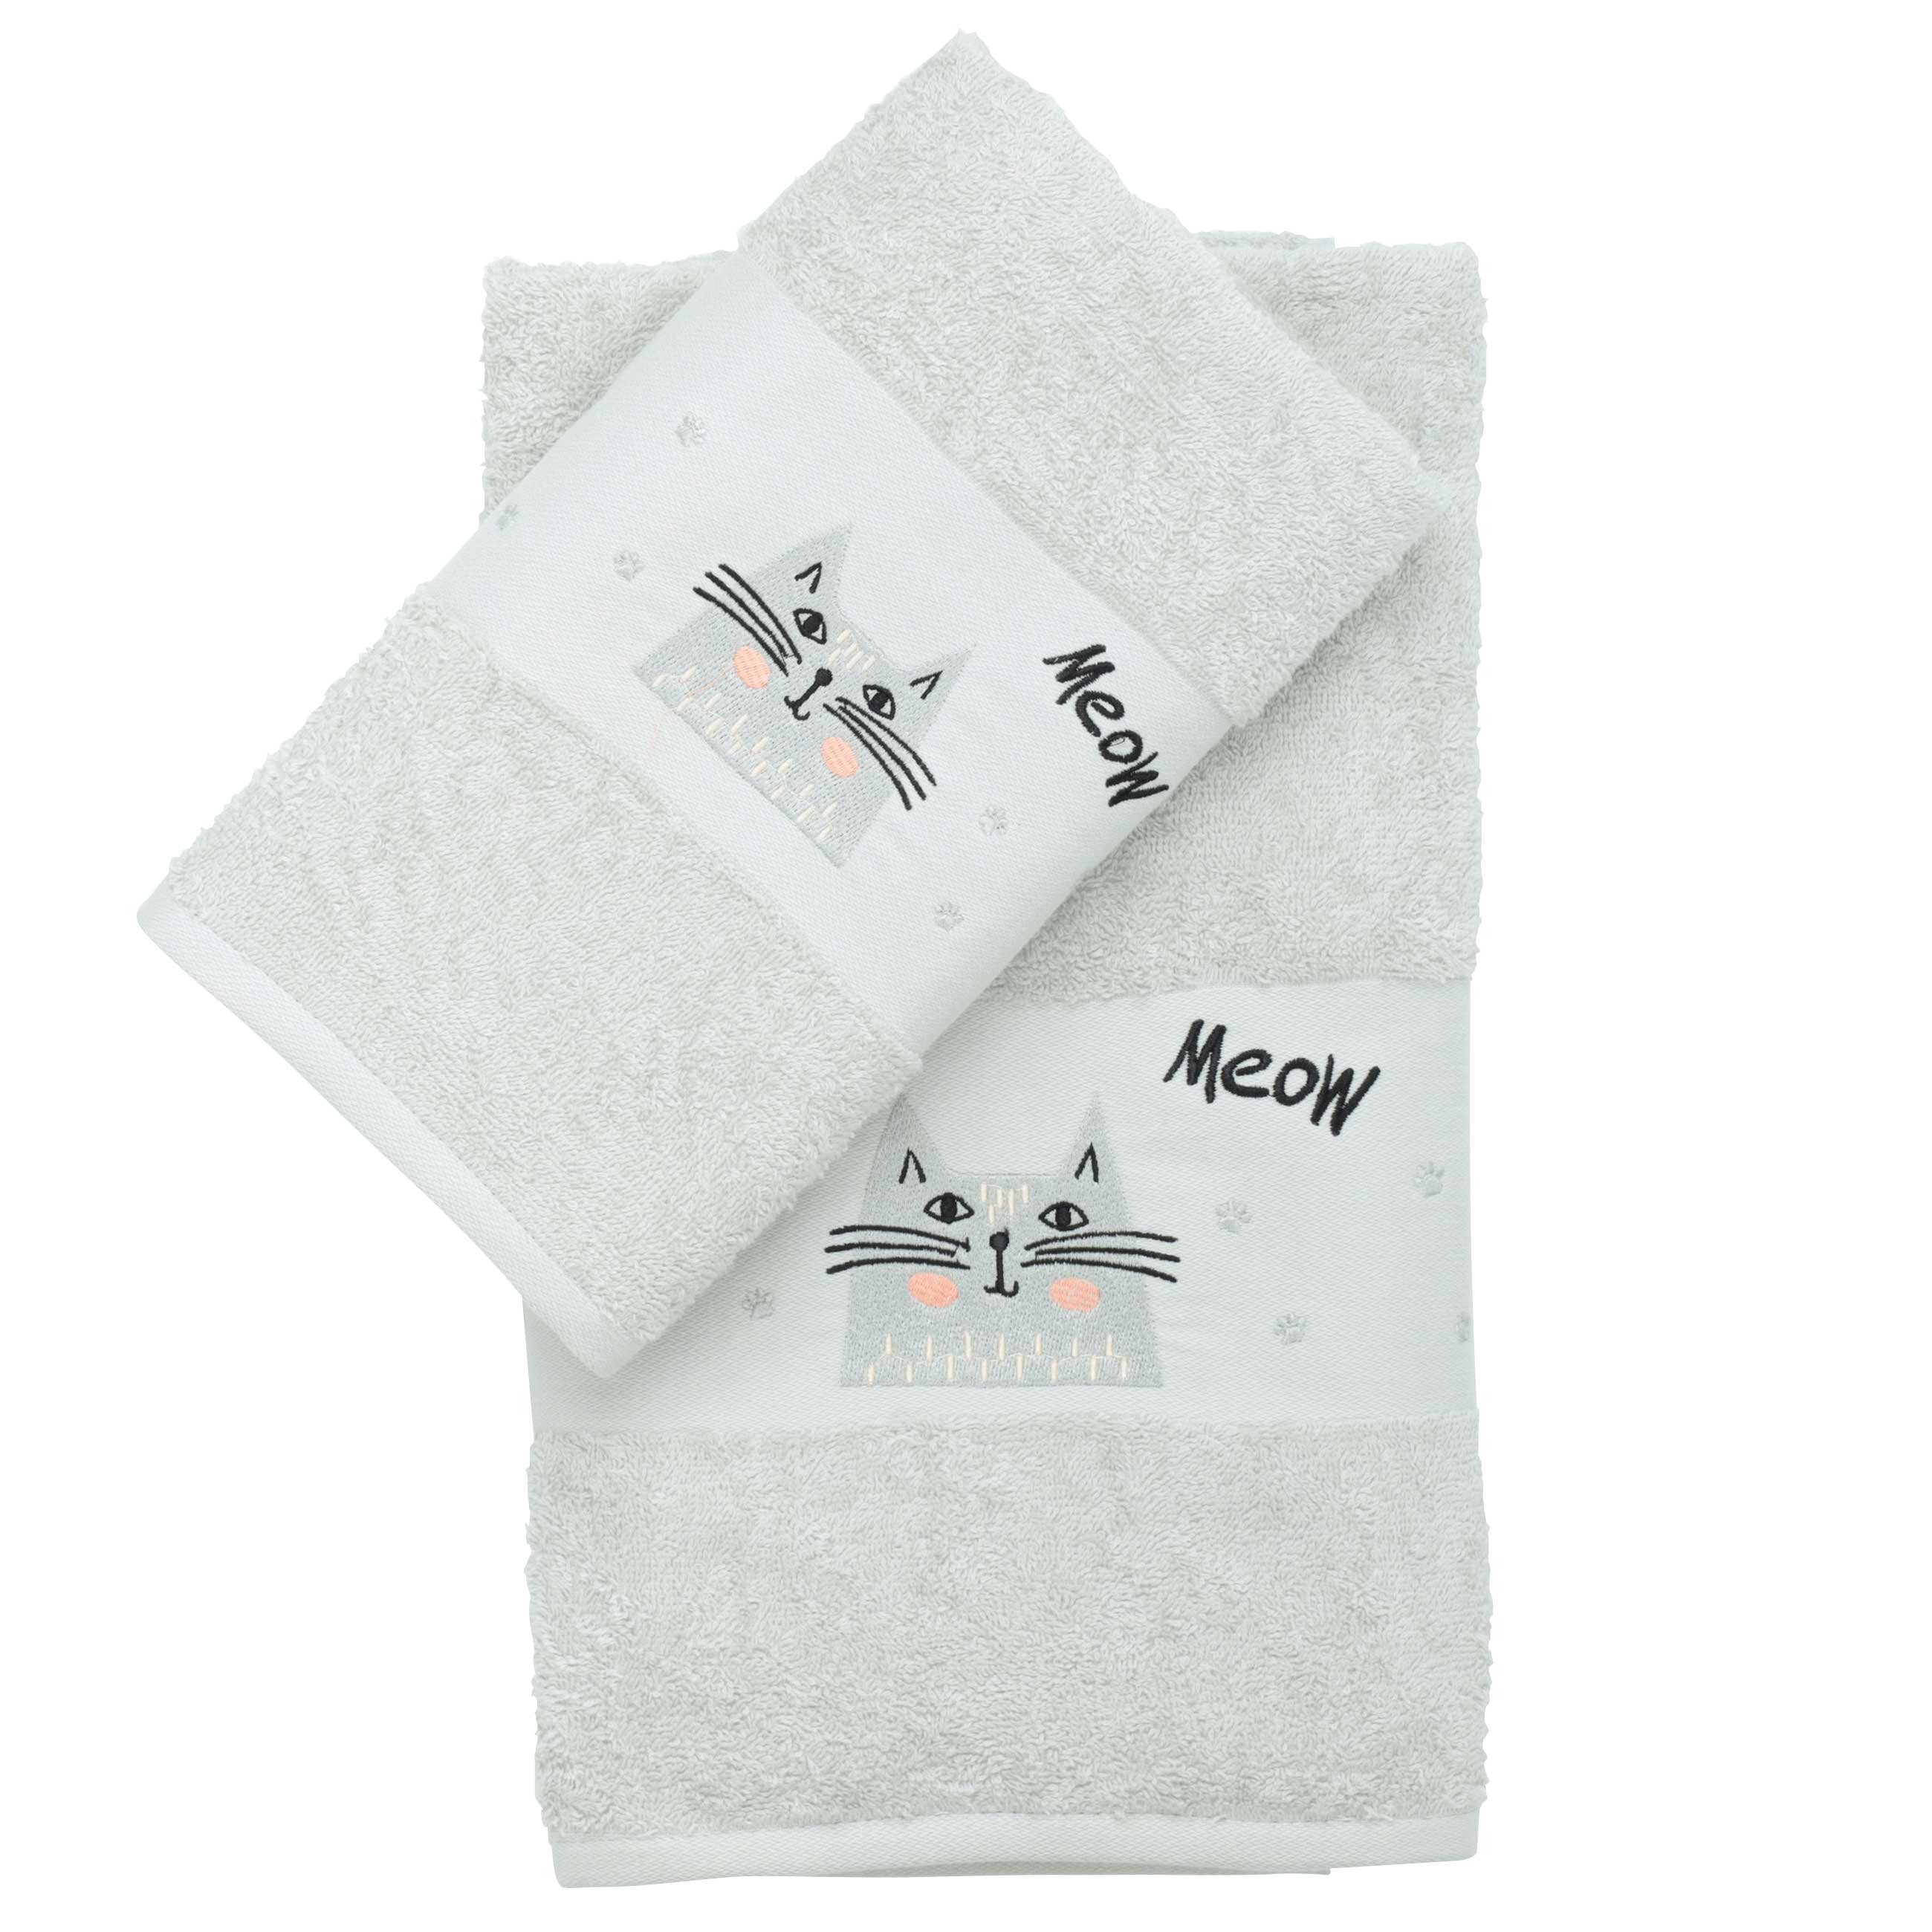 Baby towel, 50x90 cm, cotton, light grey, Cat, Grey cat изображение № 5